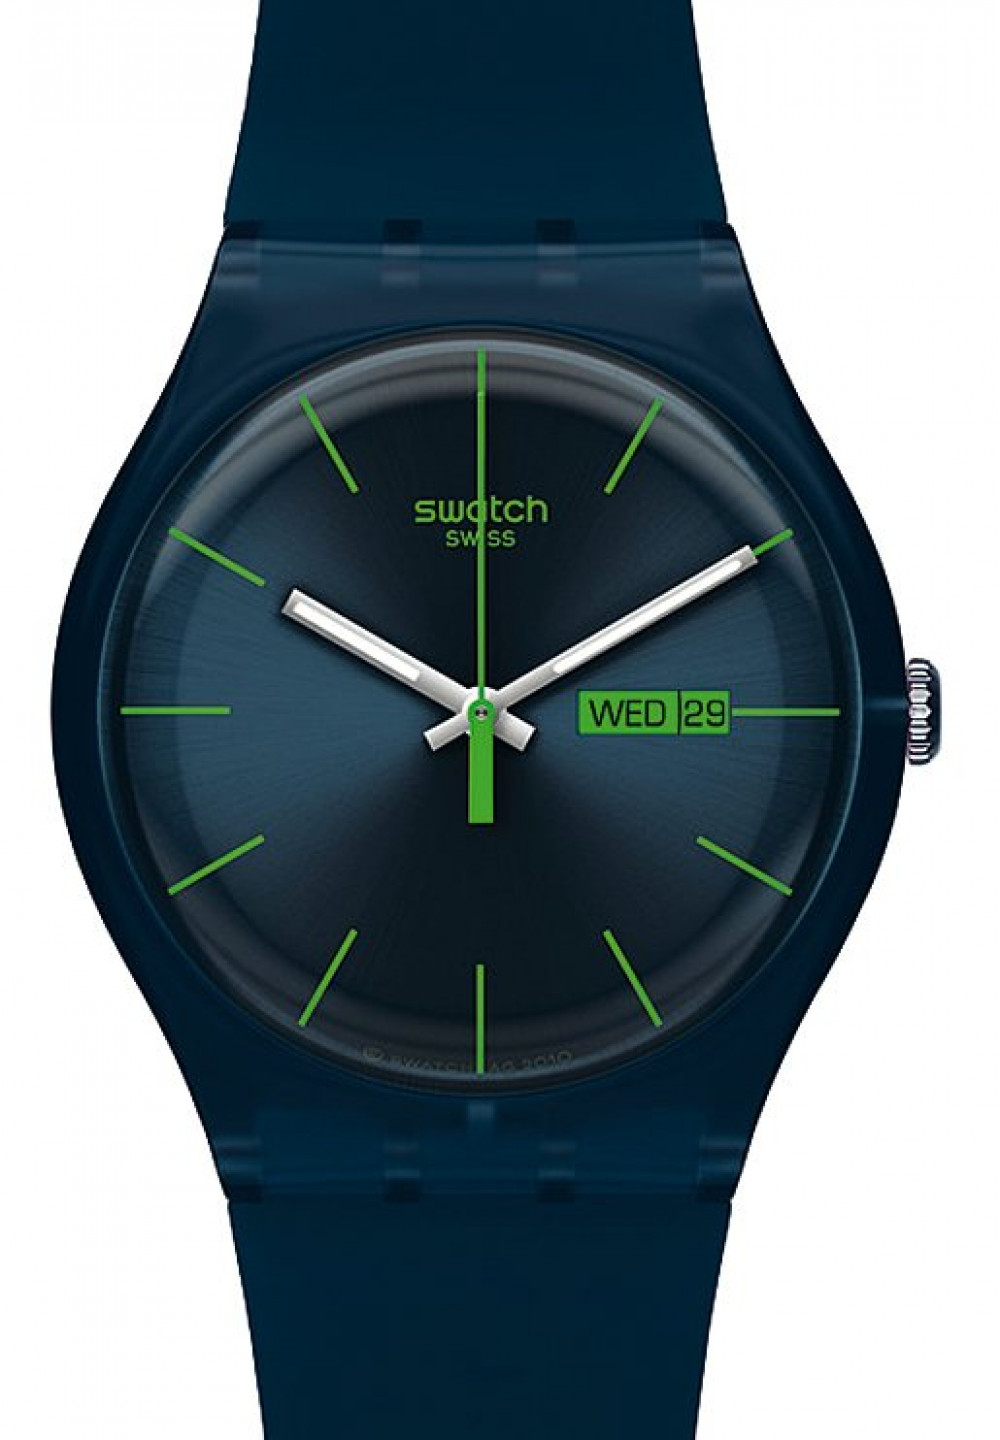 Zegarek firmy Swatch, model Blue Rebel